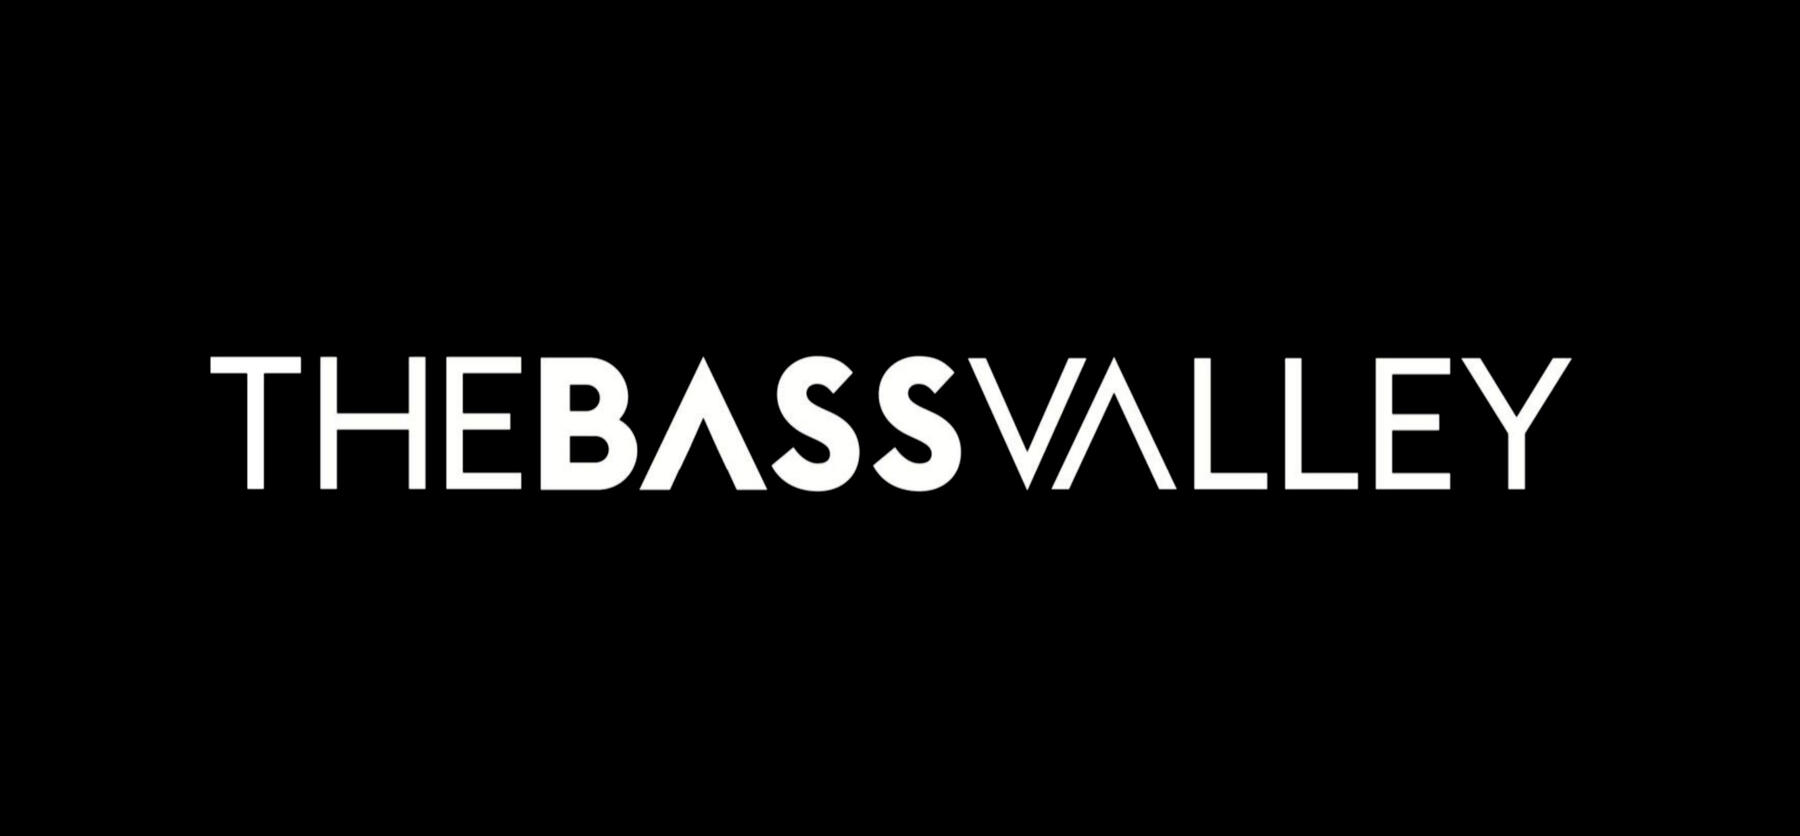 Logotipo oficial TheBassValley en blanco sobre fondo negro.